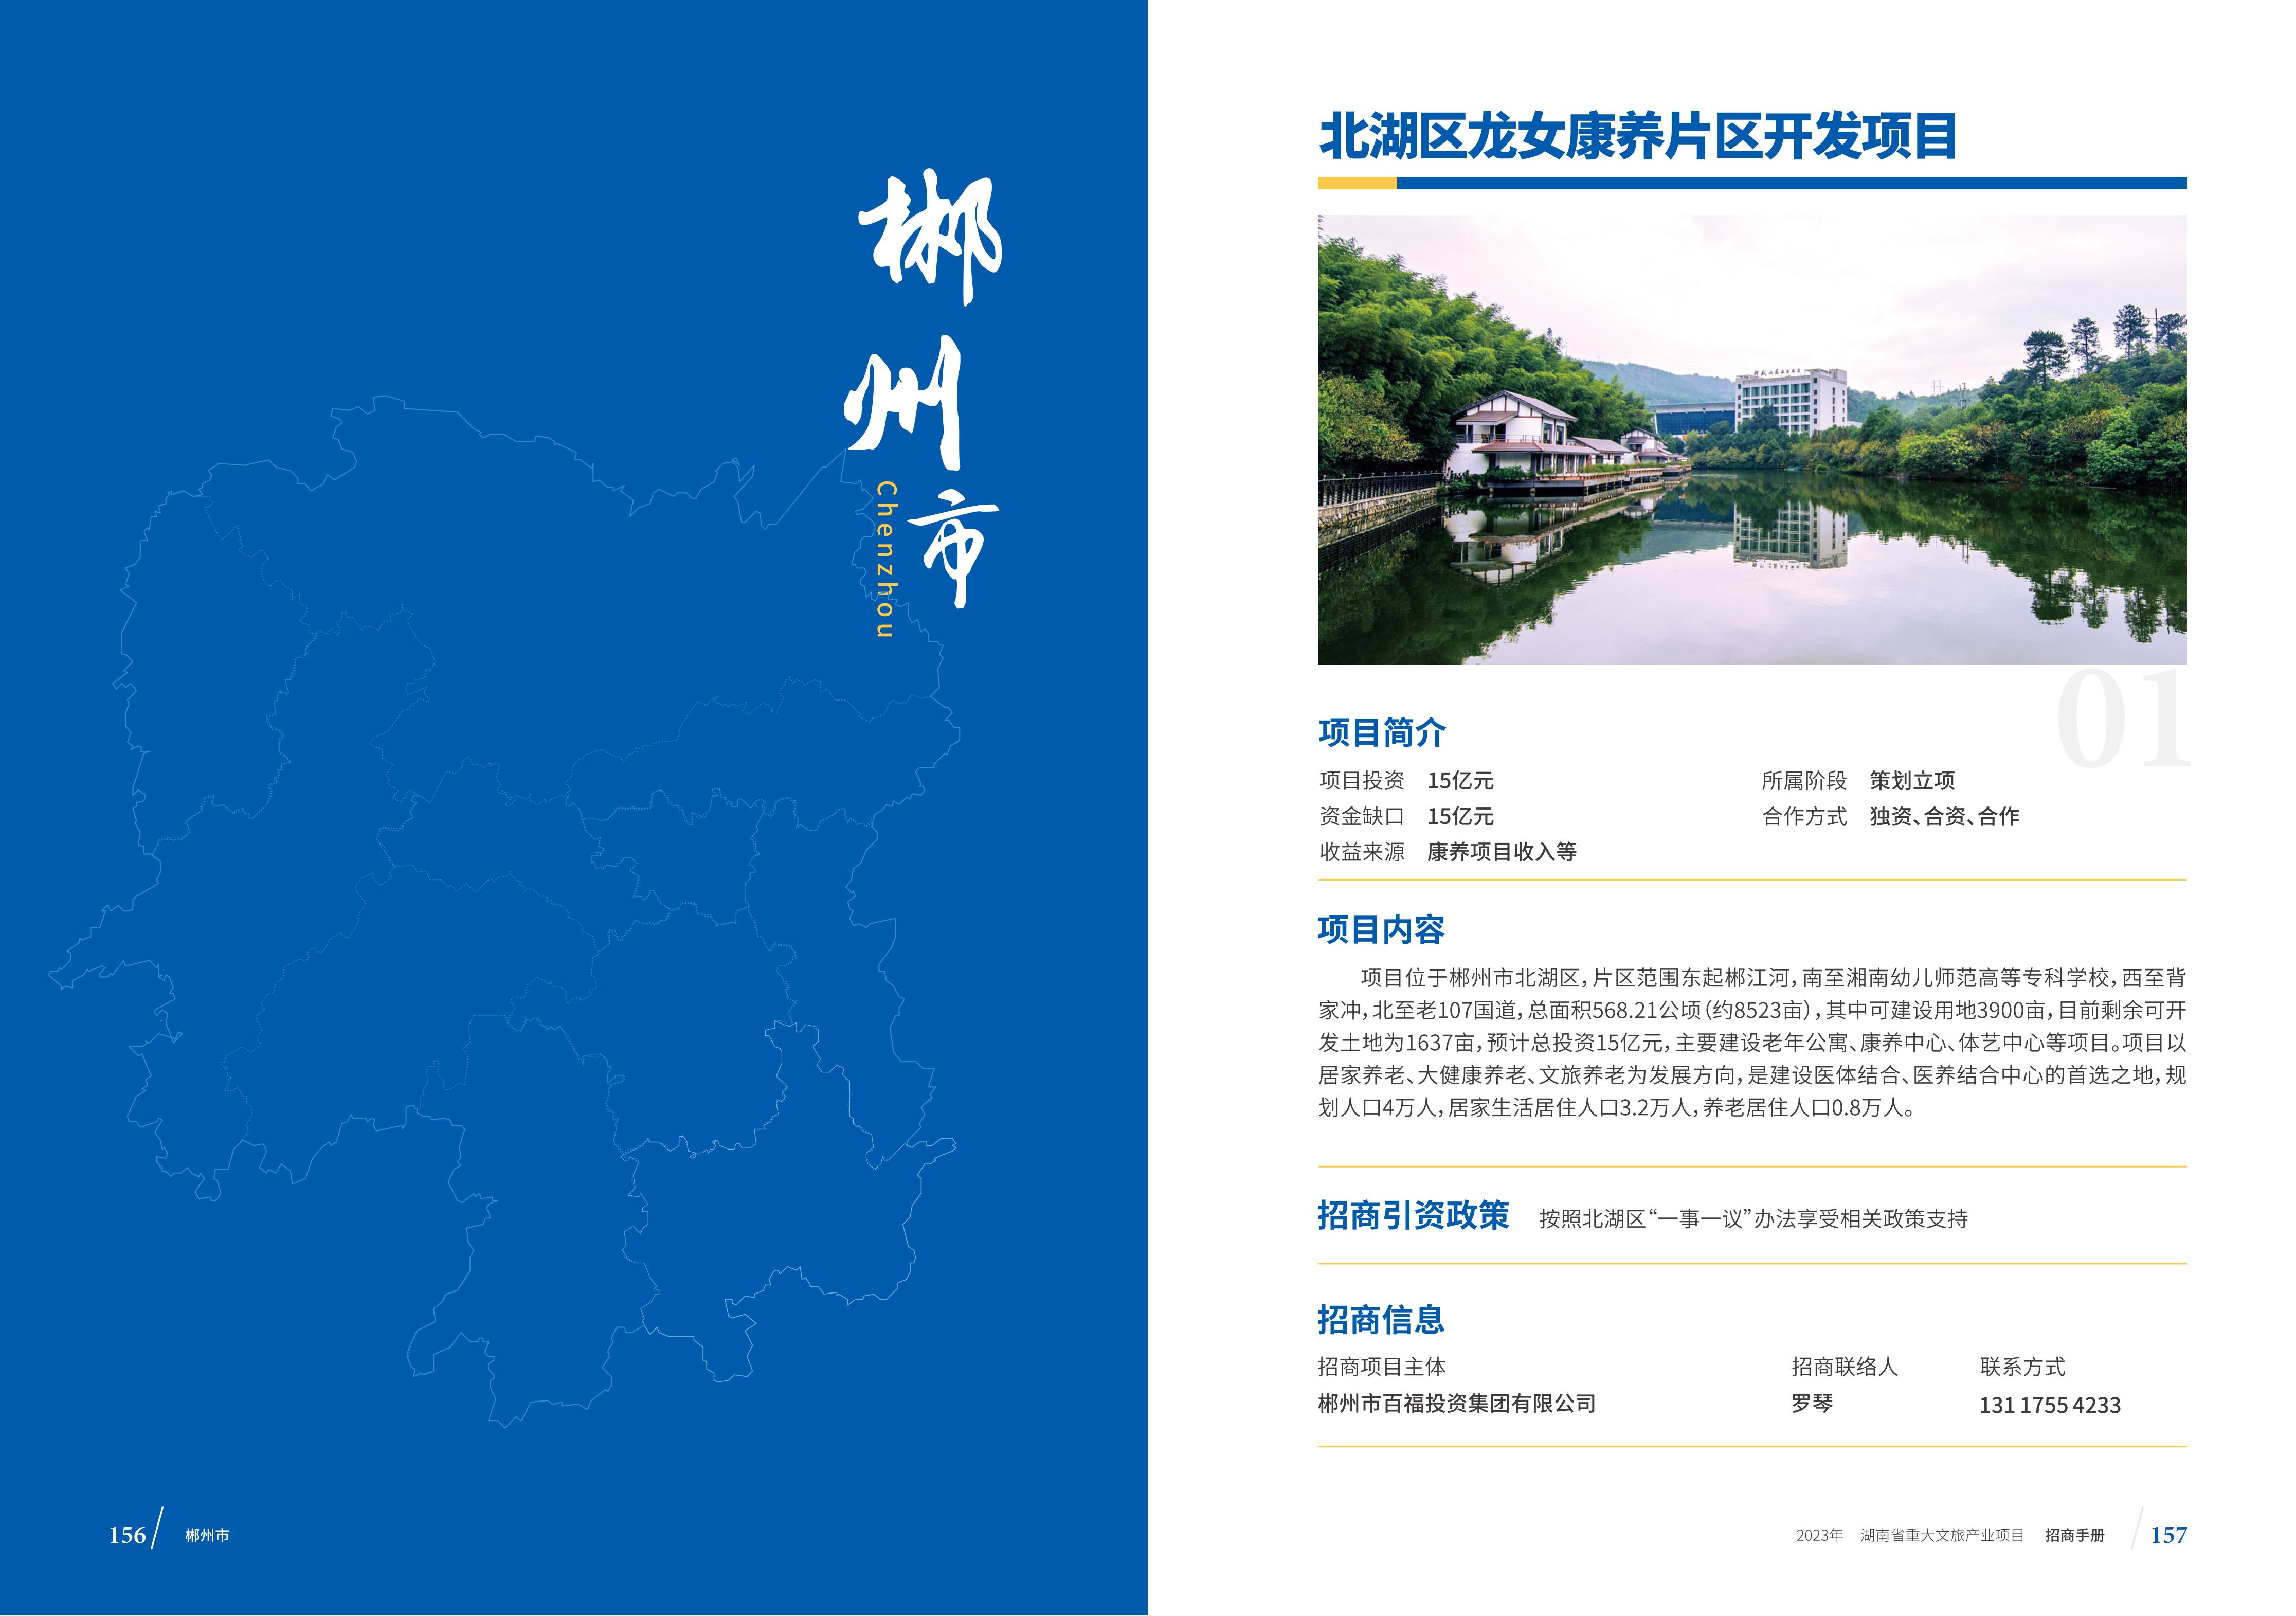 湖南省重大文旅产业项目招手册线上链接版_86.jpg